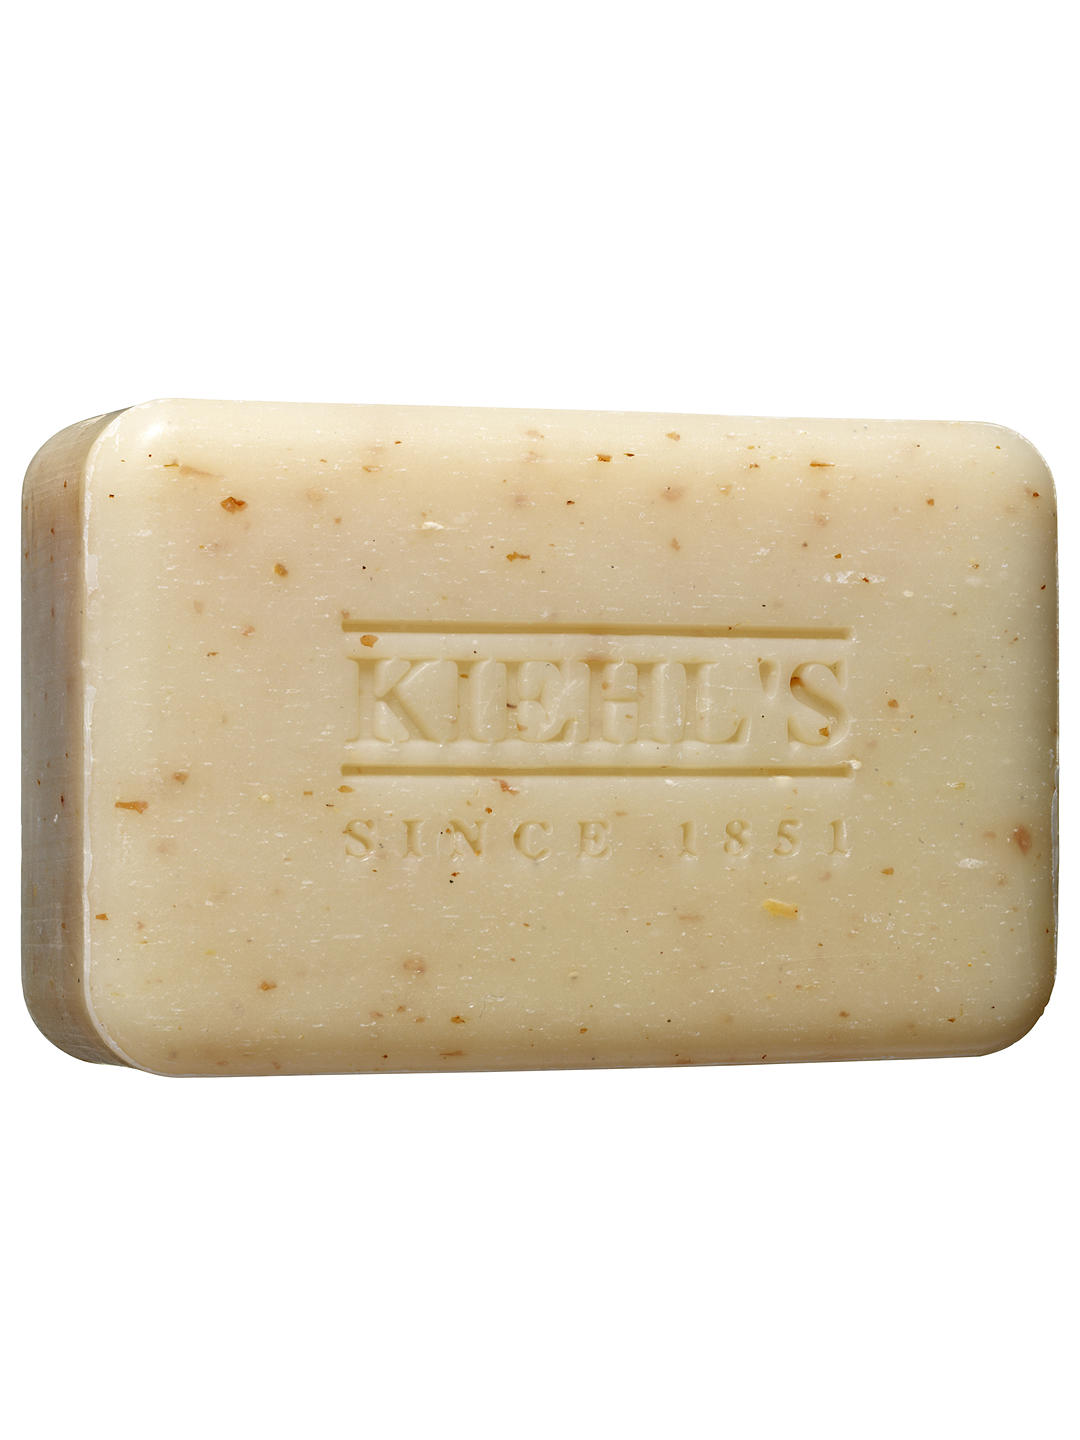 Kiehl's Ultimate Man' Body Scrub Soap, 200g 1